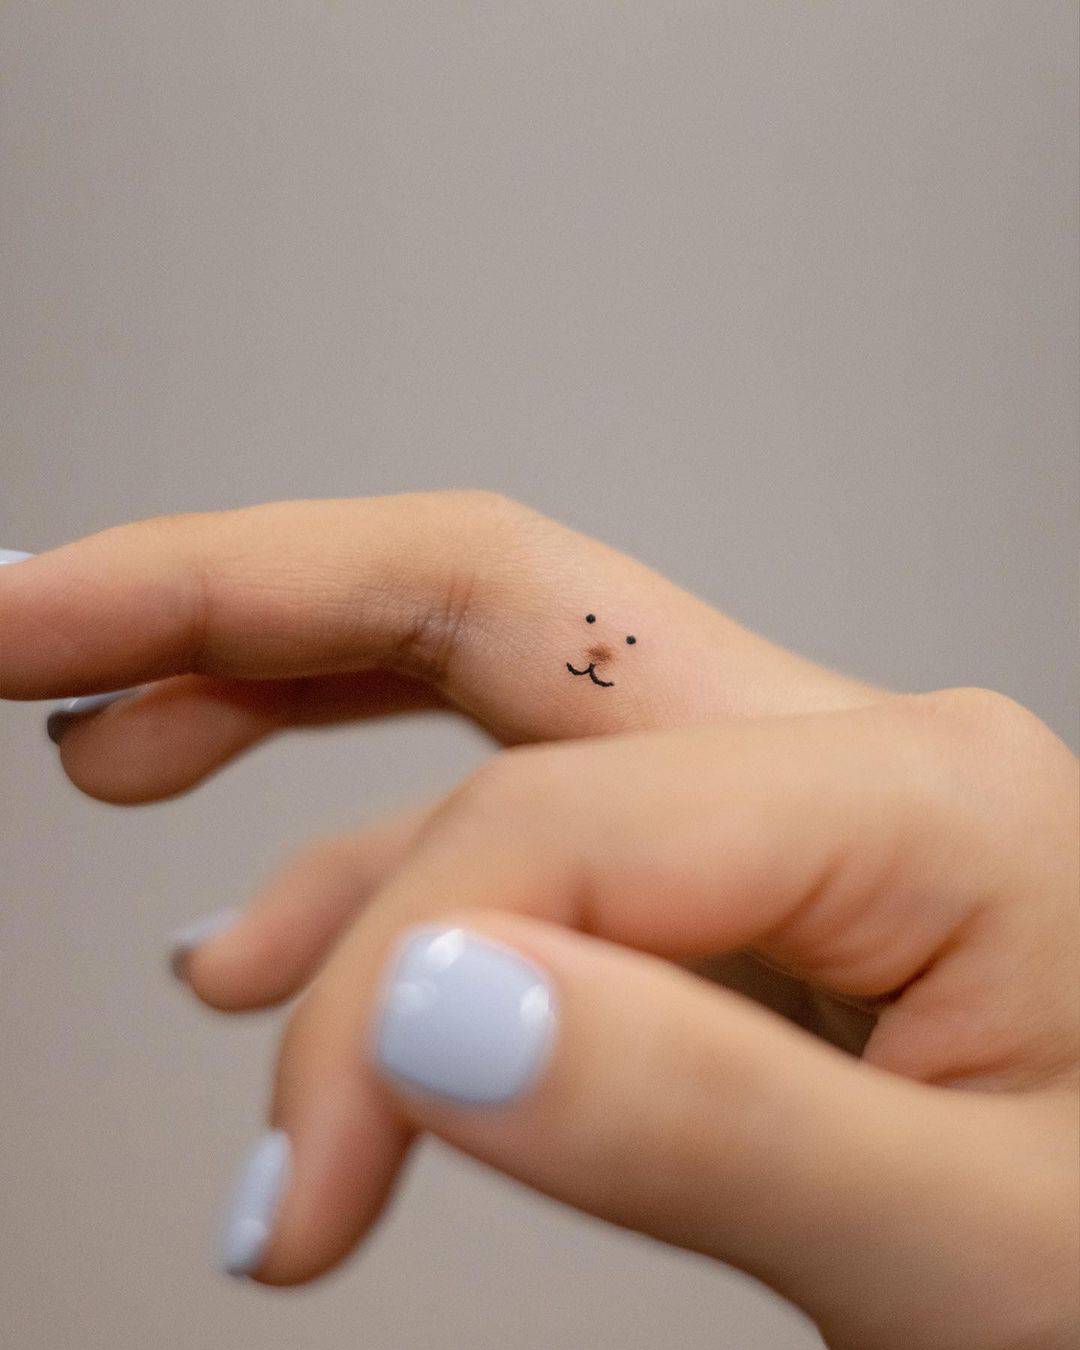 mini finger tattoo design by handitrip